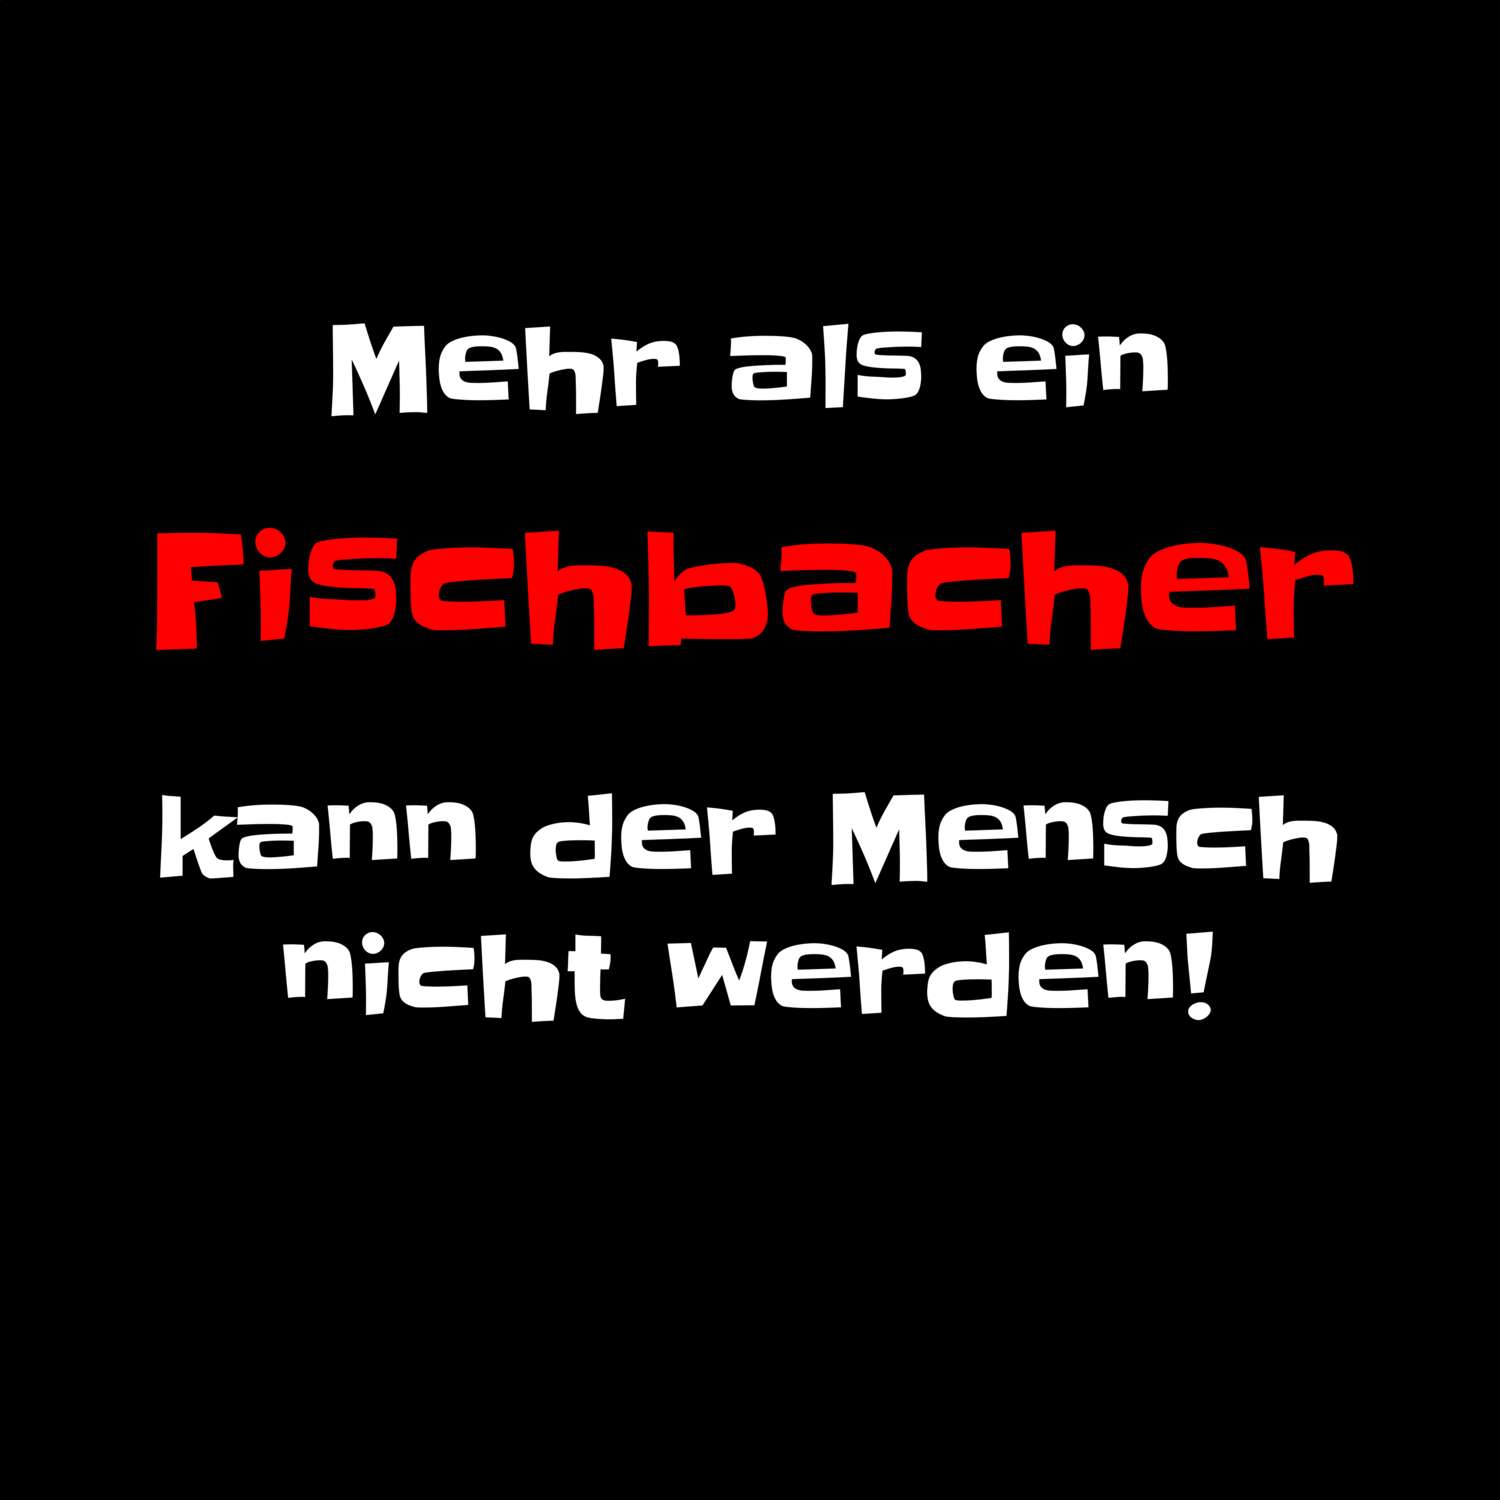 Fischbach T-Shirt »Mehr als ein«